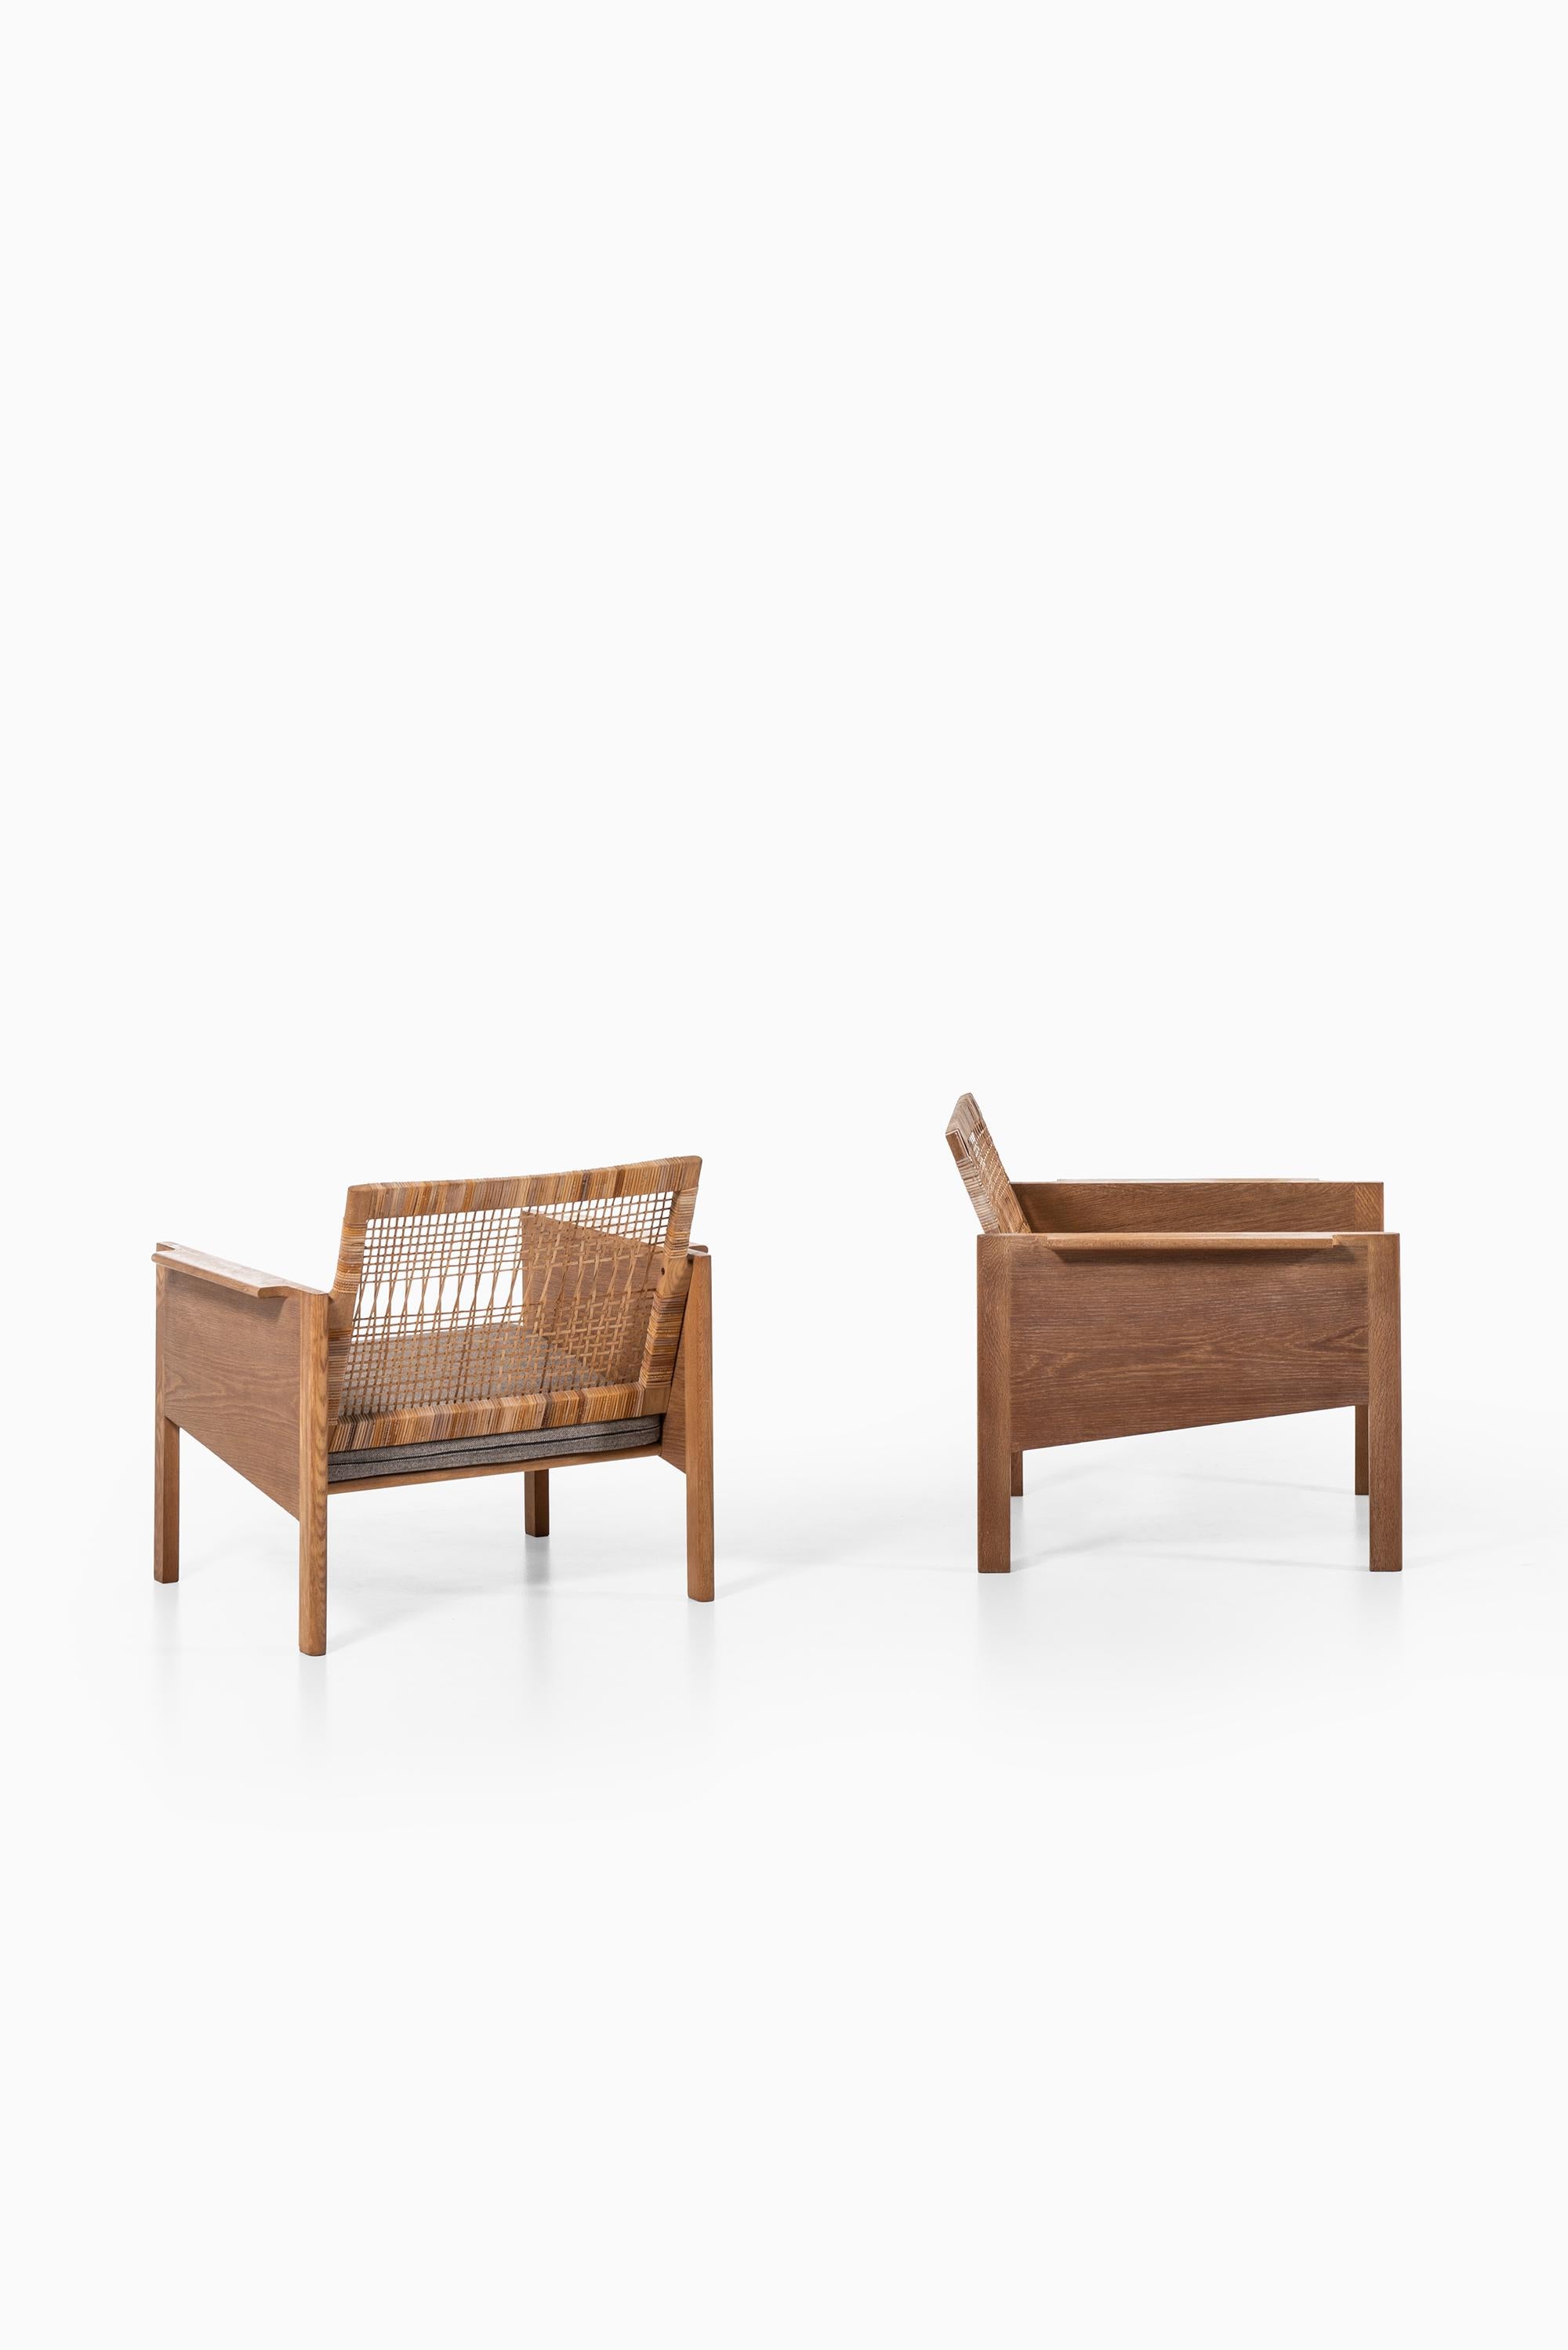 Scandinavian Modern Kai Kristiansen Easy Chairs Model 150 by Christian Jensen Møbelsnedkeri For Sale